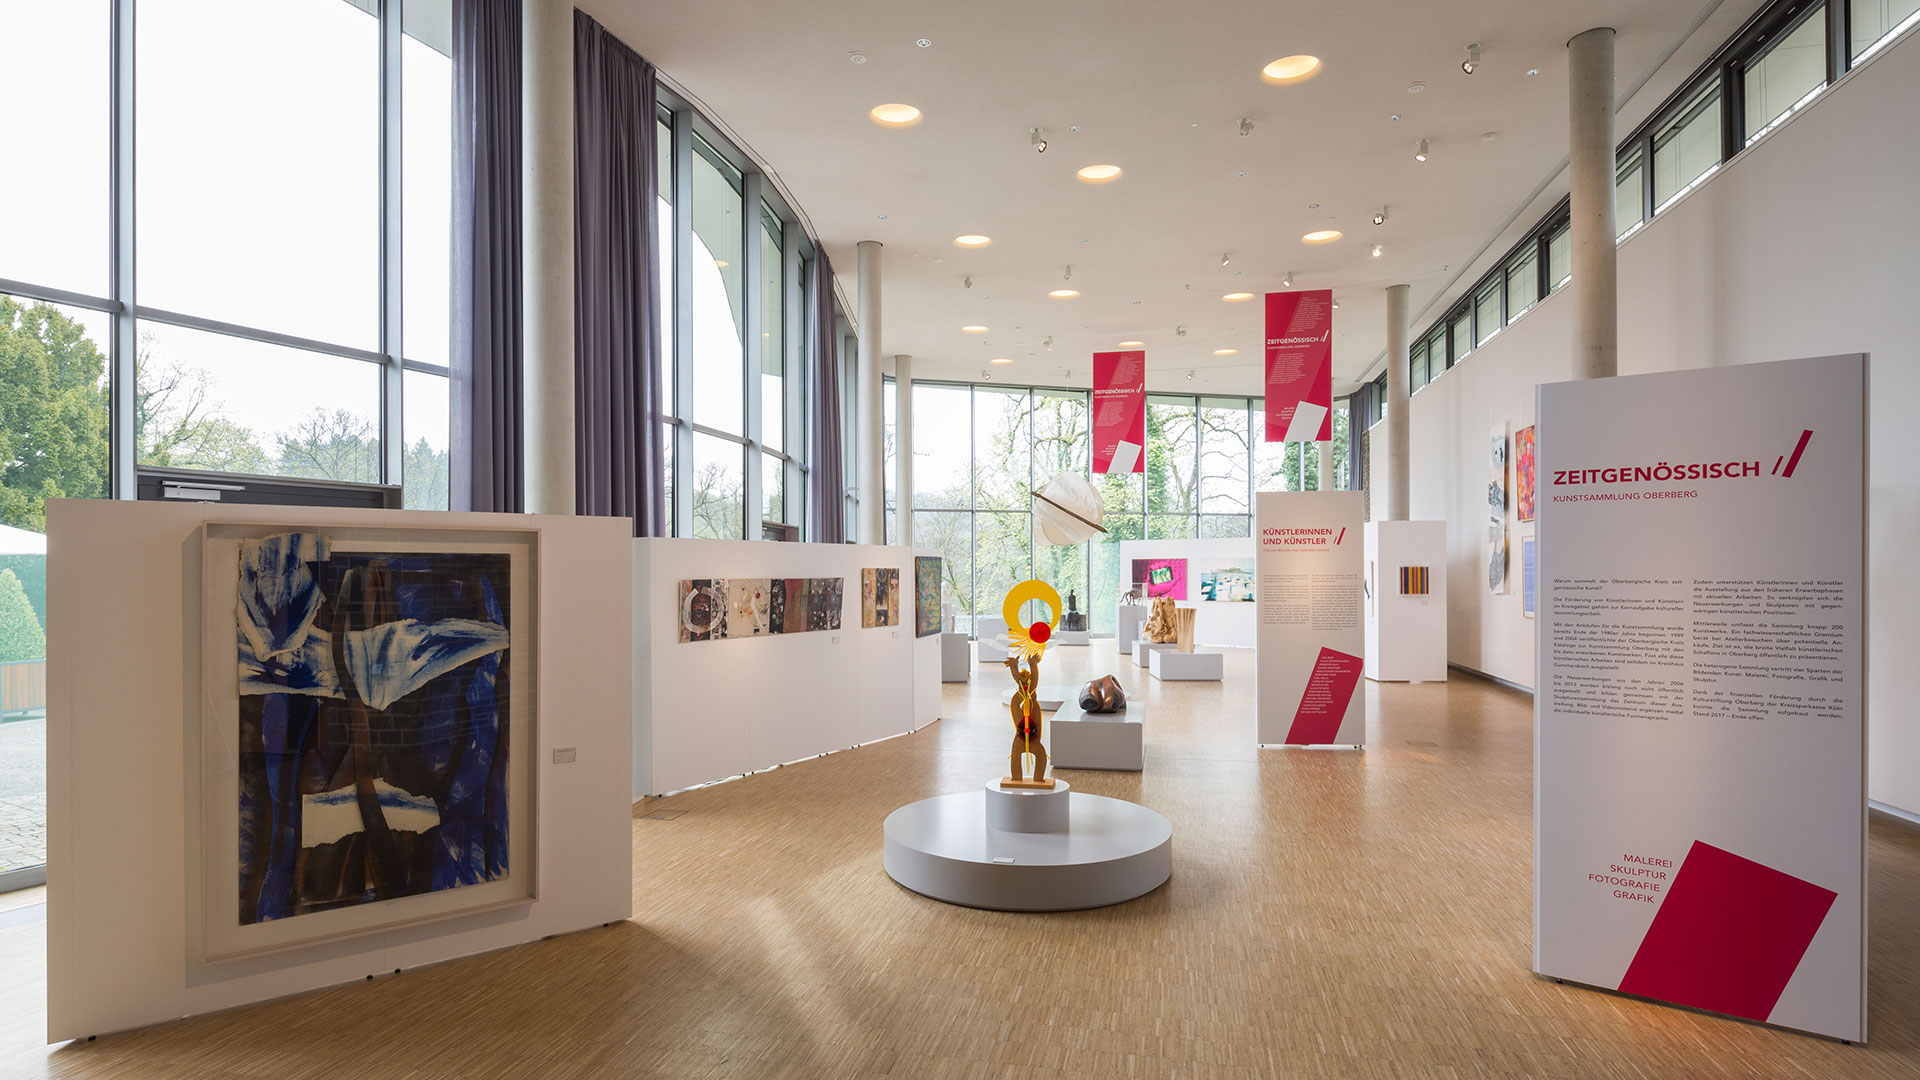 Zeitgenössisch Schloss Homburg Ausstellung